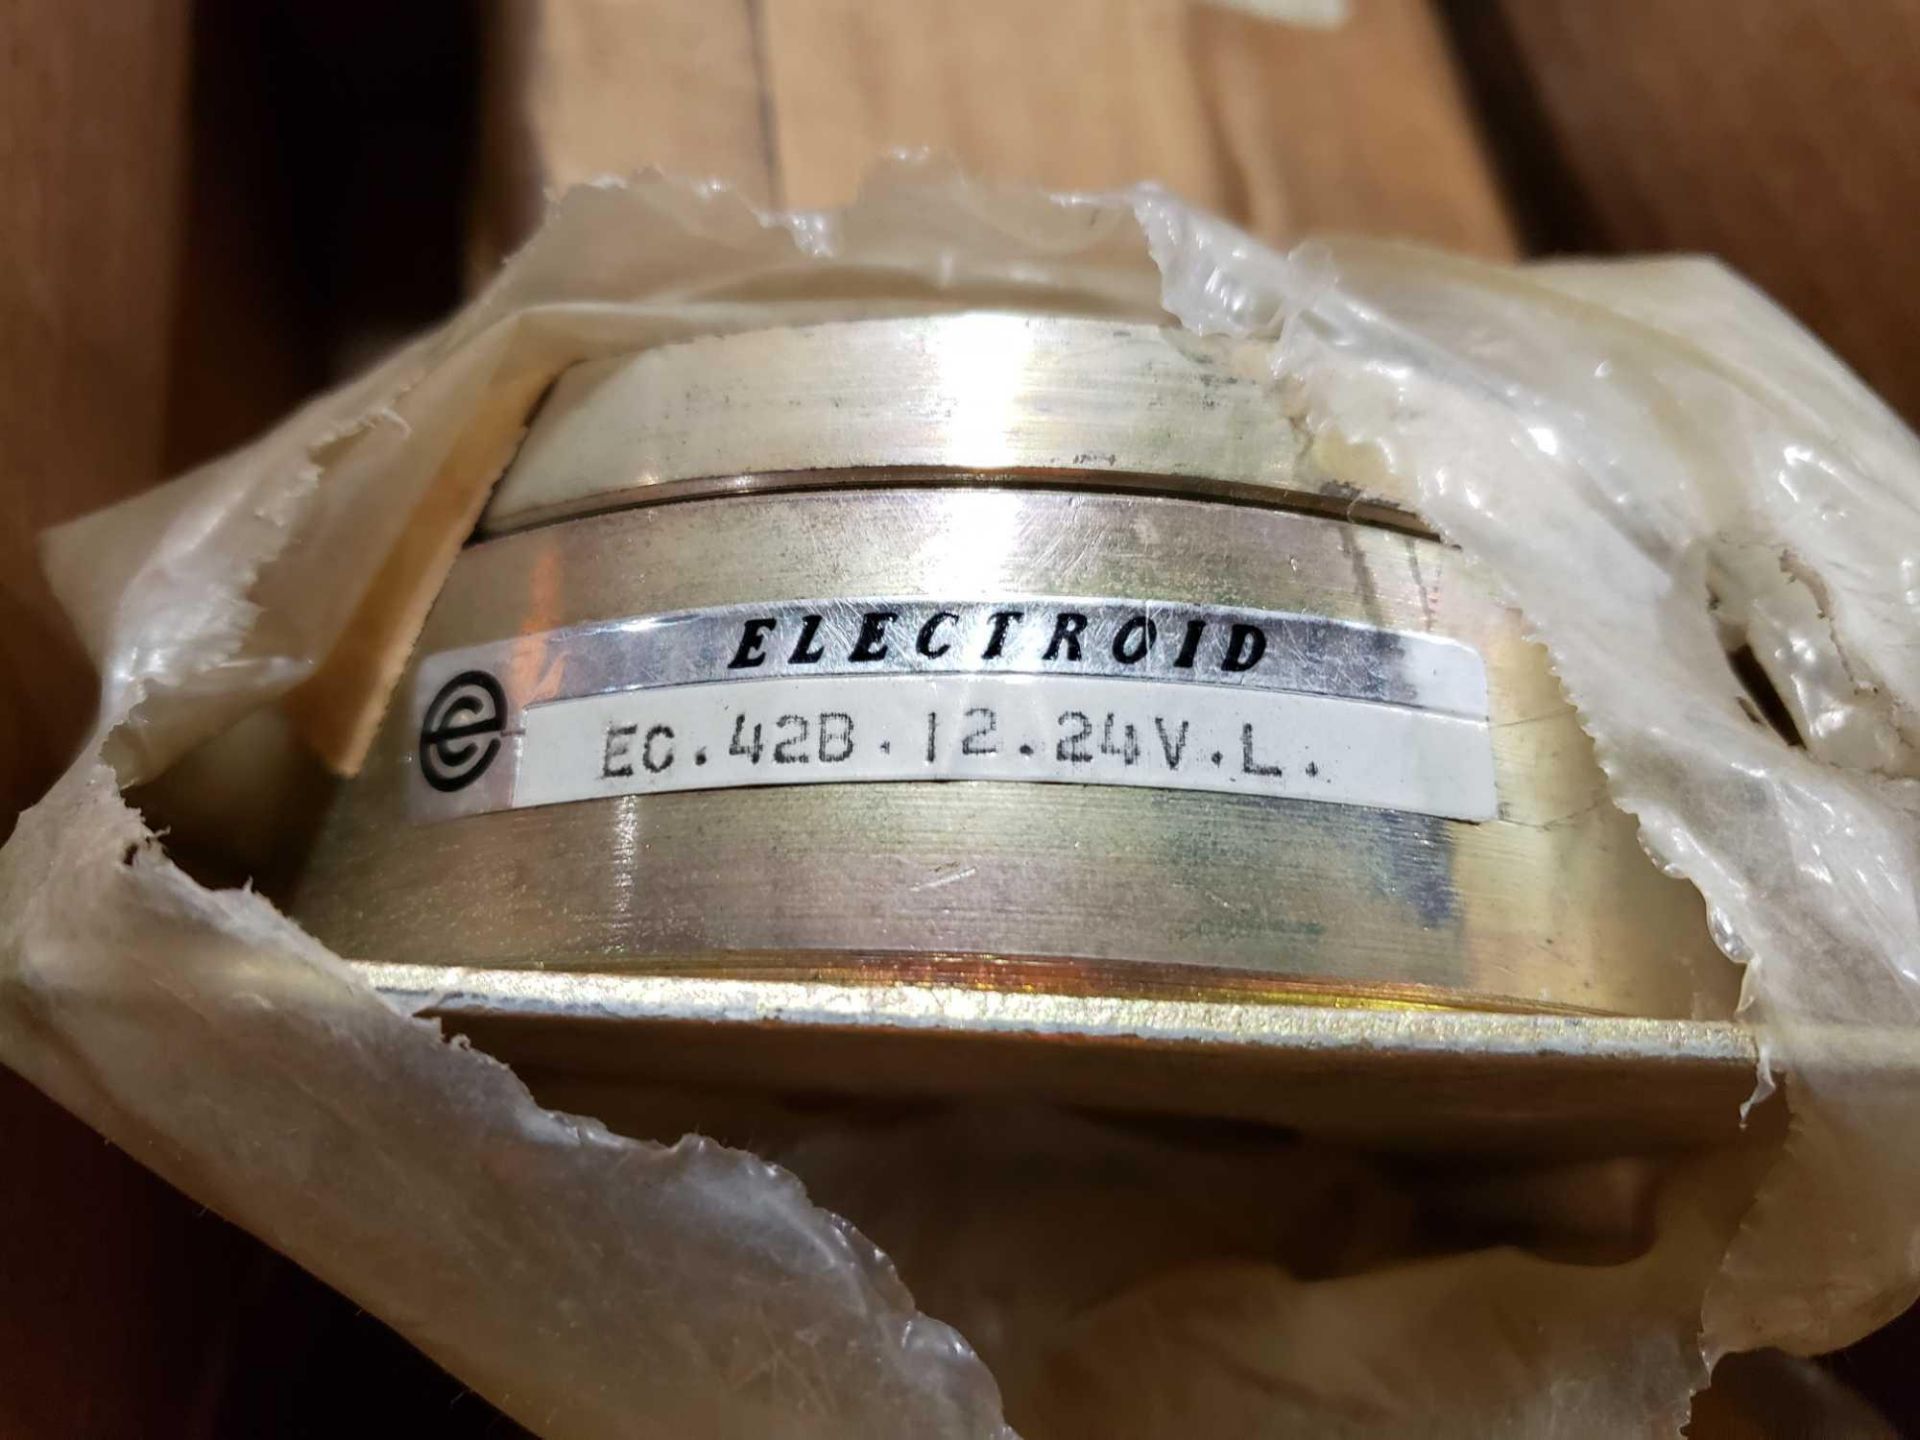 Electroid. Model EC.42B.12.24V.L. New in box. - Image 3 of 3